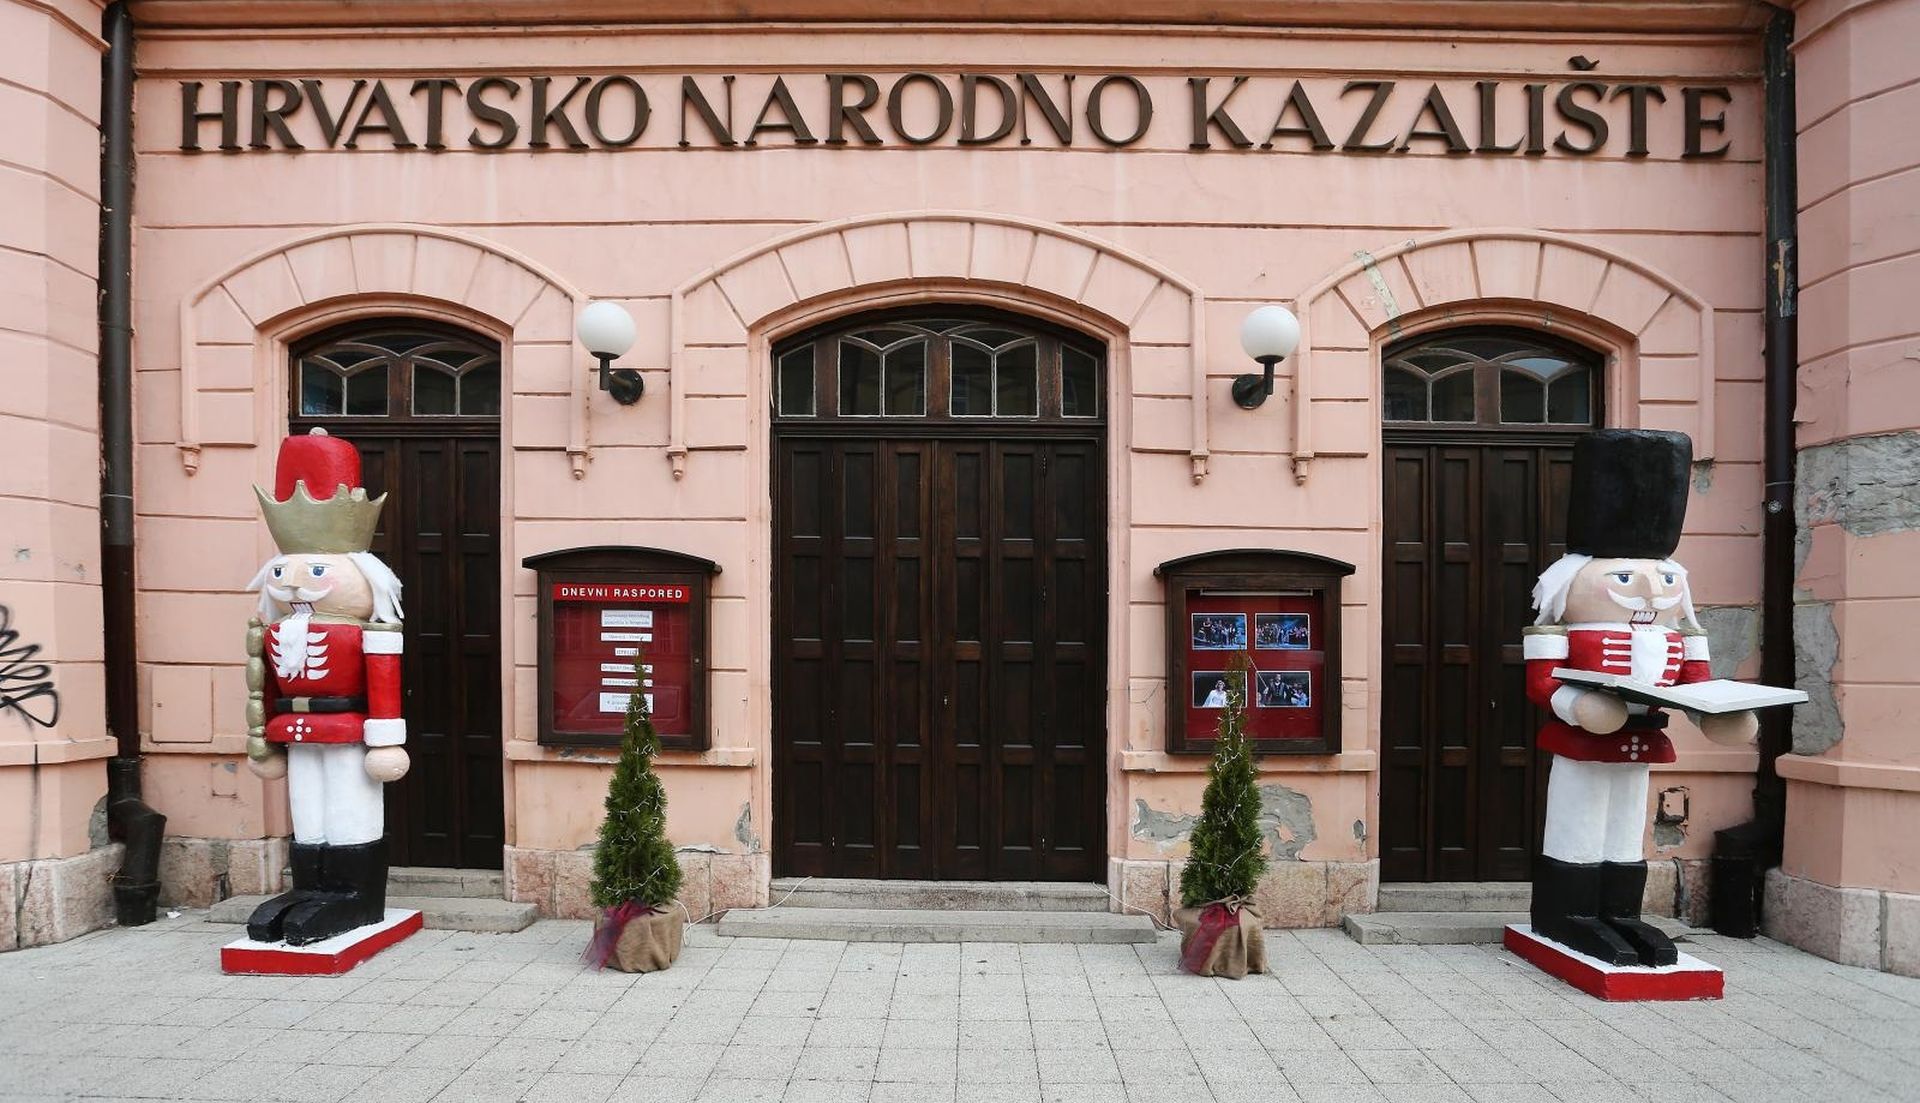 04.12.2017., Osijek - Dvije dvometarske skulpture Orasara ispred zgrade HNK-a privukle paznju prolaznika.
Photo: Davor Javorovic/PIXSELL